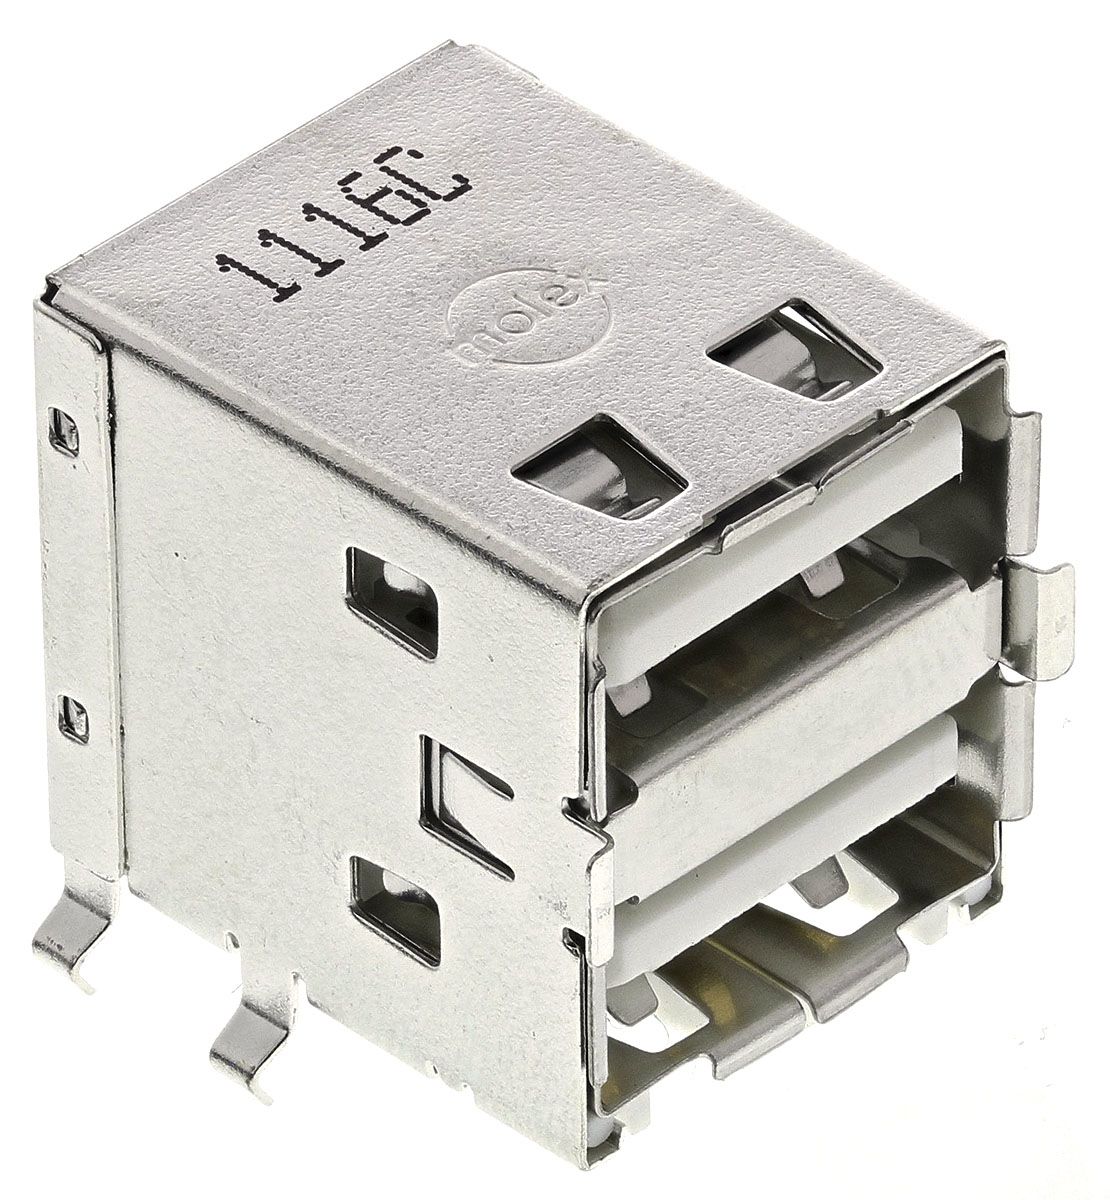 Conector USB Molex 67298-4090, Hembra, 2 puertos, Ángulo de 90° , Orificio Pasante, 30,0 V., 1.5A 67298